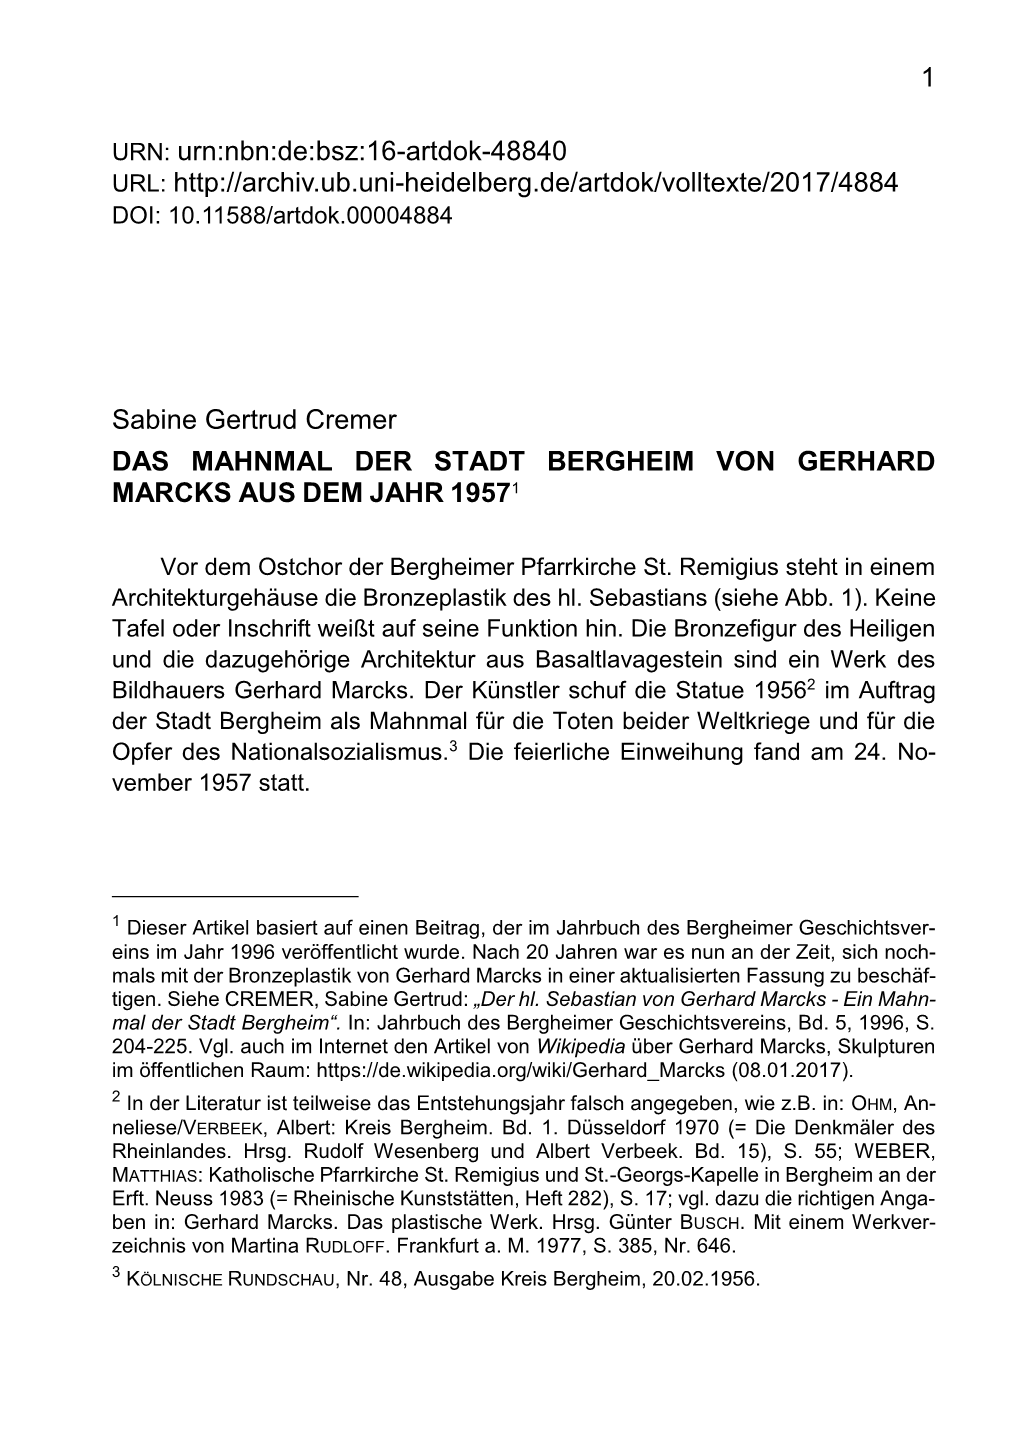 Sabine Gertrud Cremer DAS MAHNMAL DER STADT BERGHEIM VON GERHARD MARCKS AUS DEM JAHR 19571